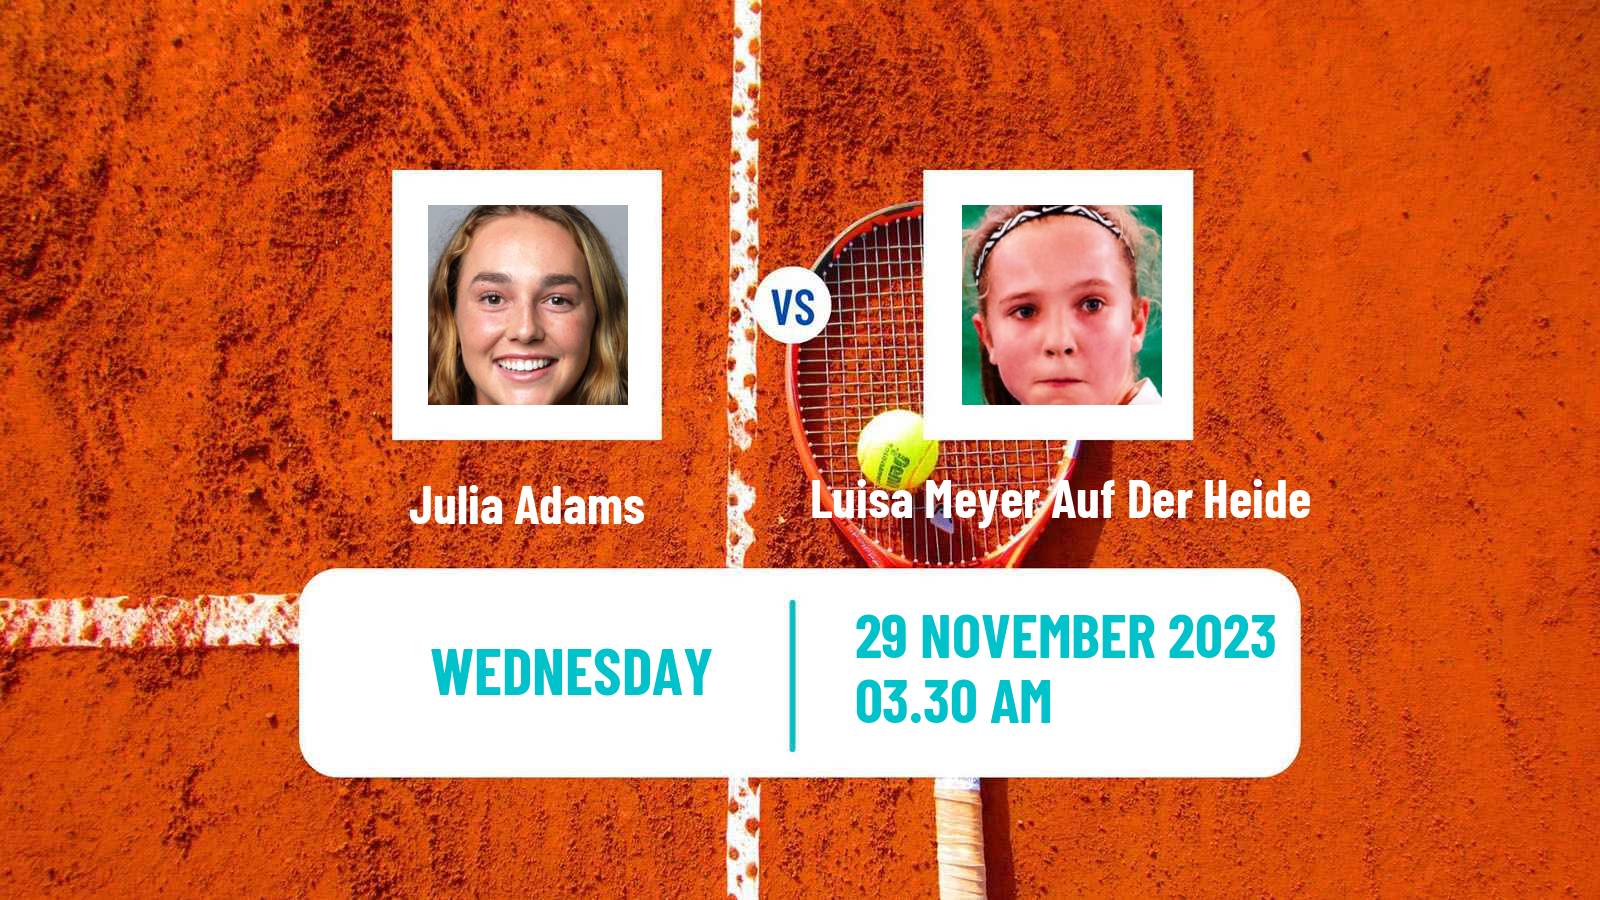 Tennis ITF W15 Monastir 42 Women Julia Adams - Luisa Meyer Auf Der Heide